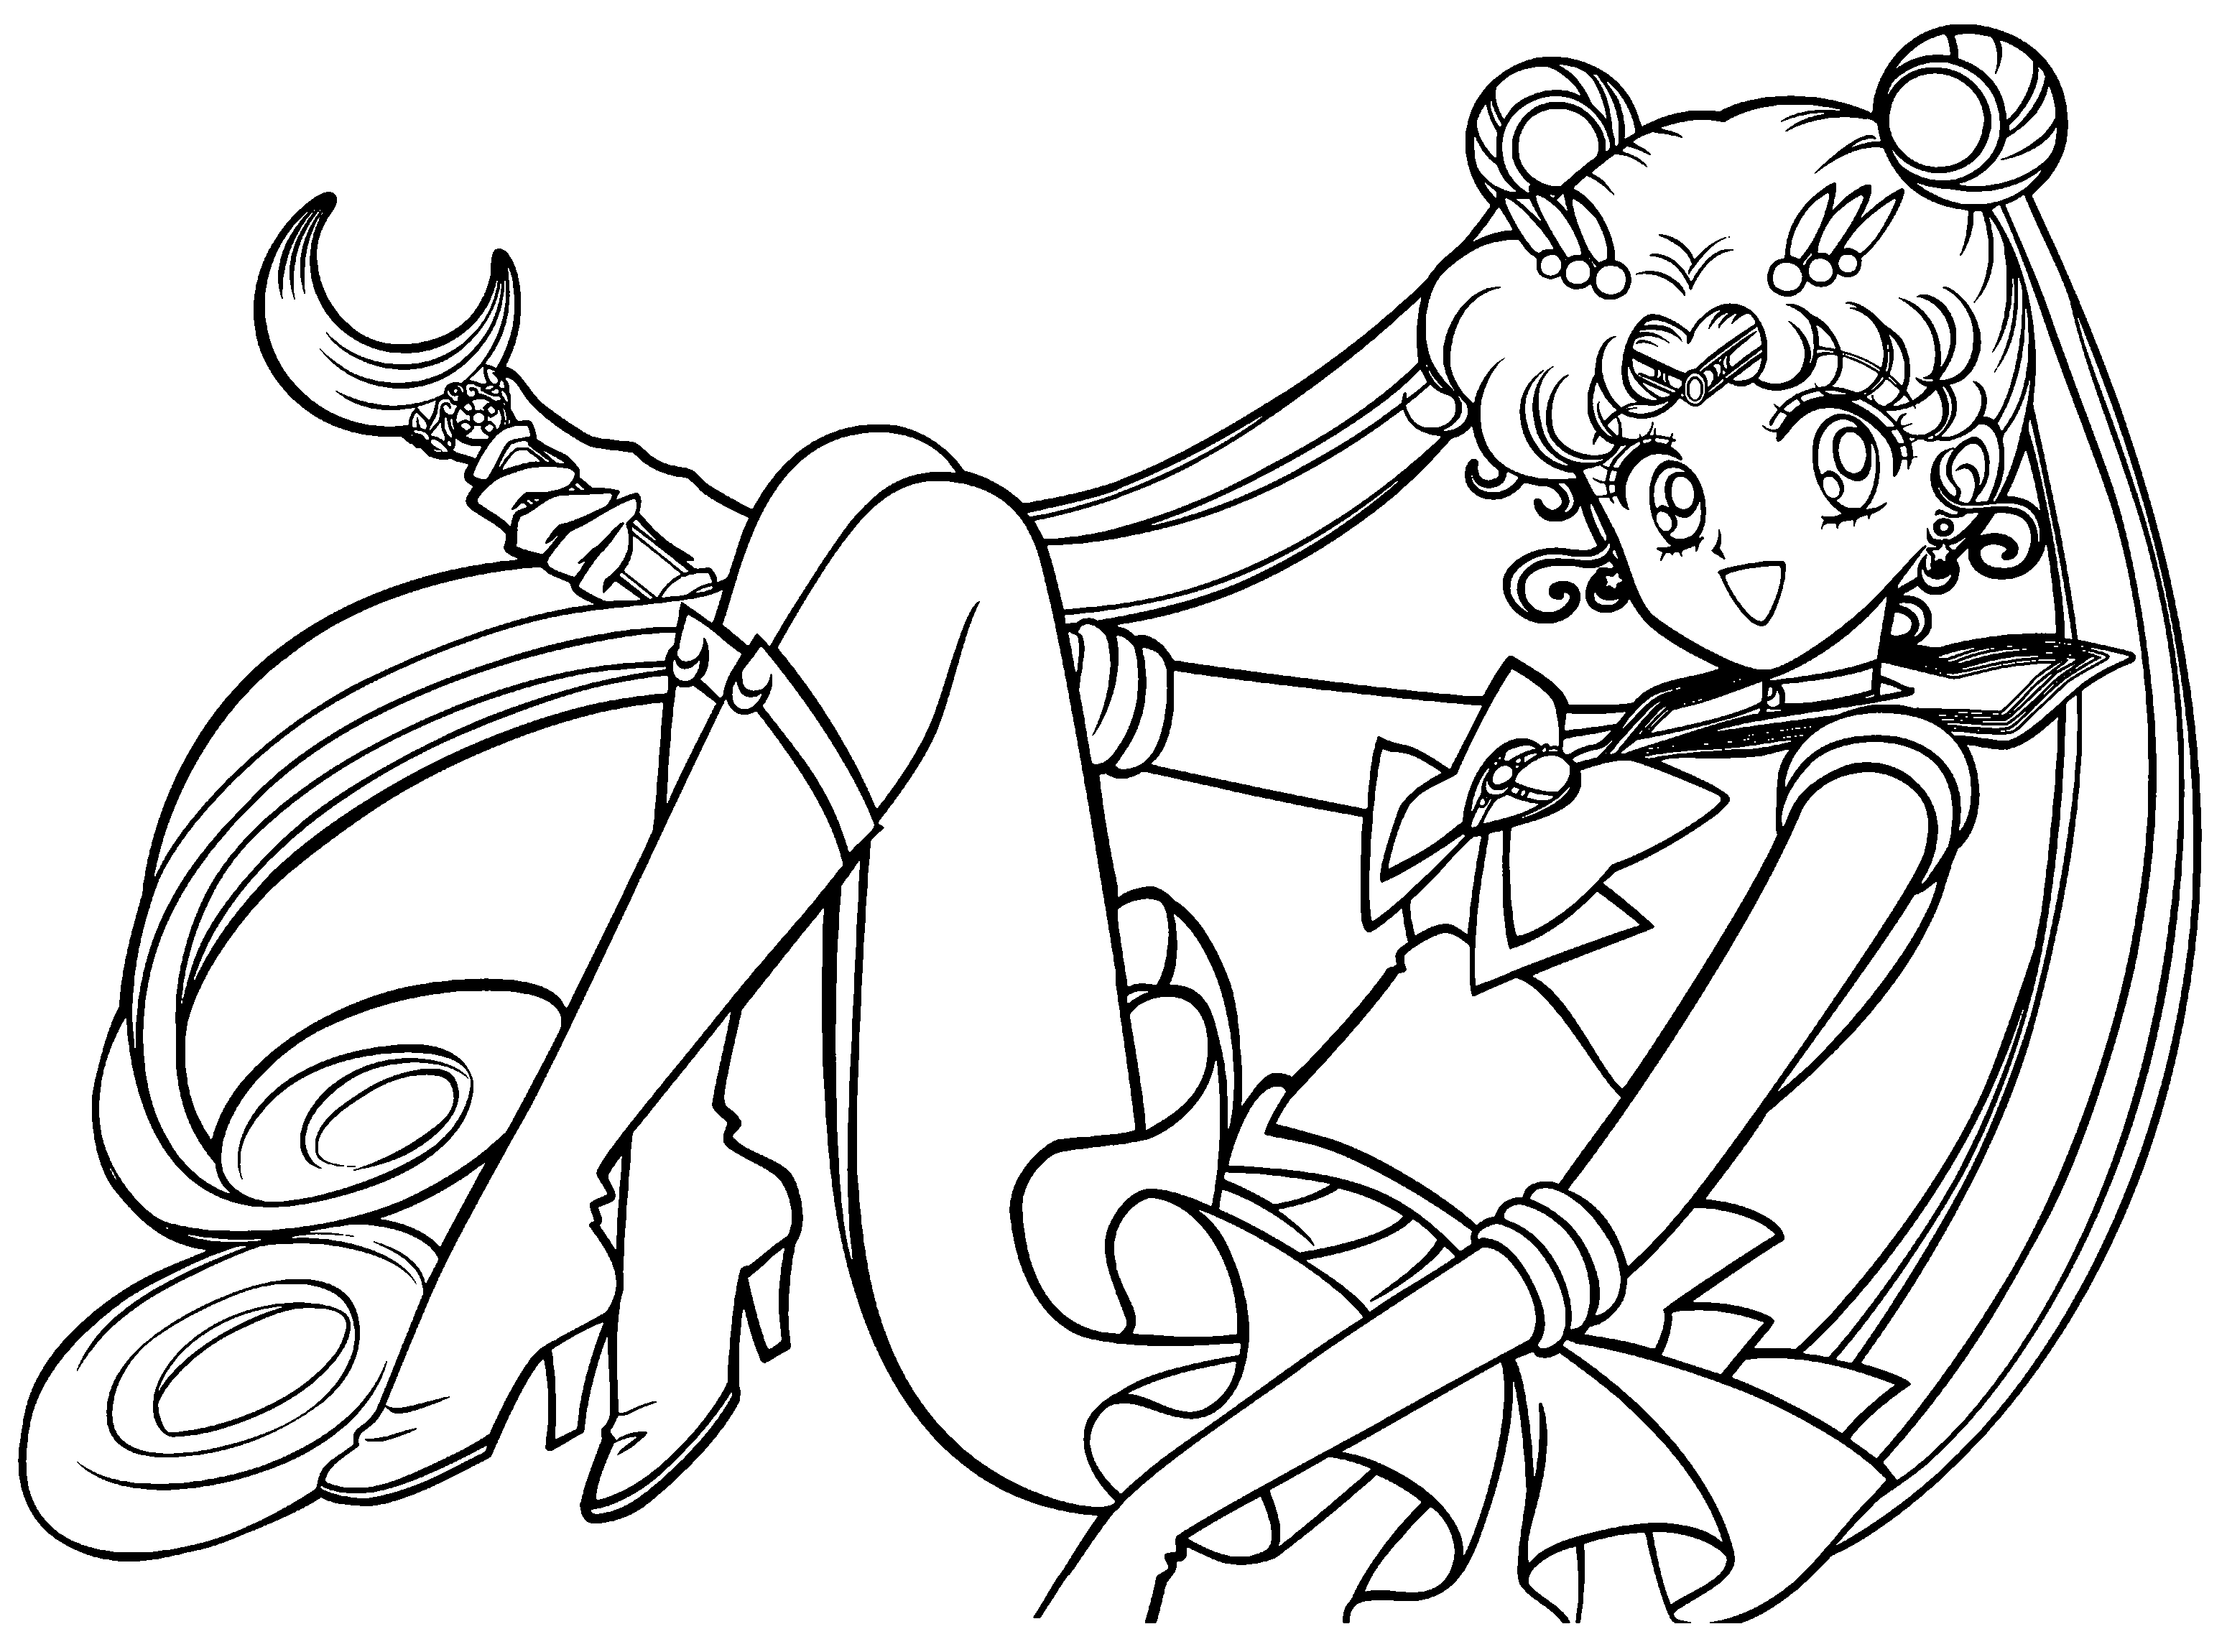 Bellissima Sailor Moon da stampare e da colorare gratis